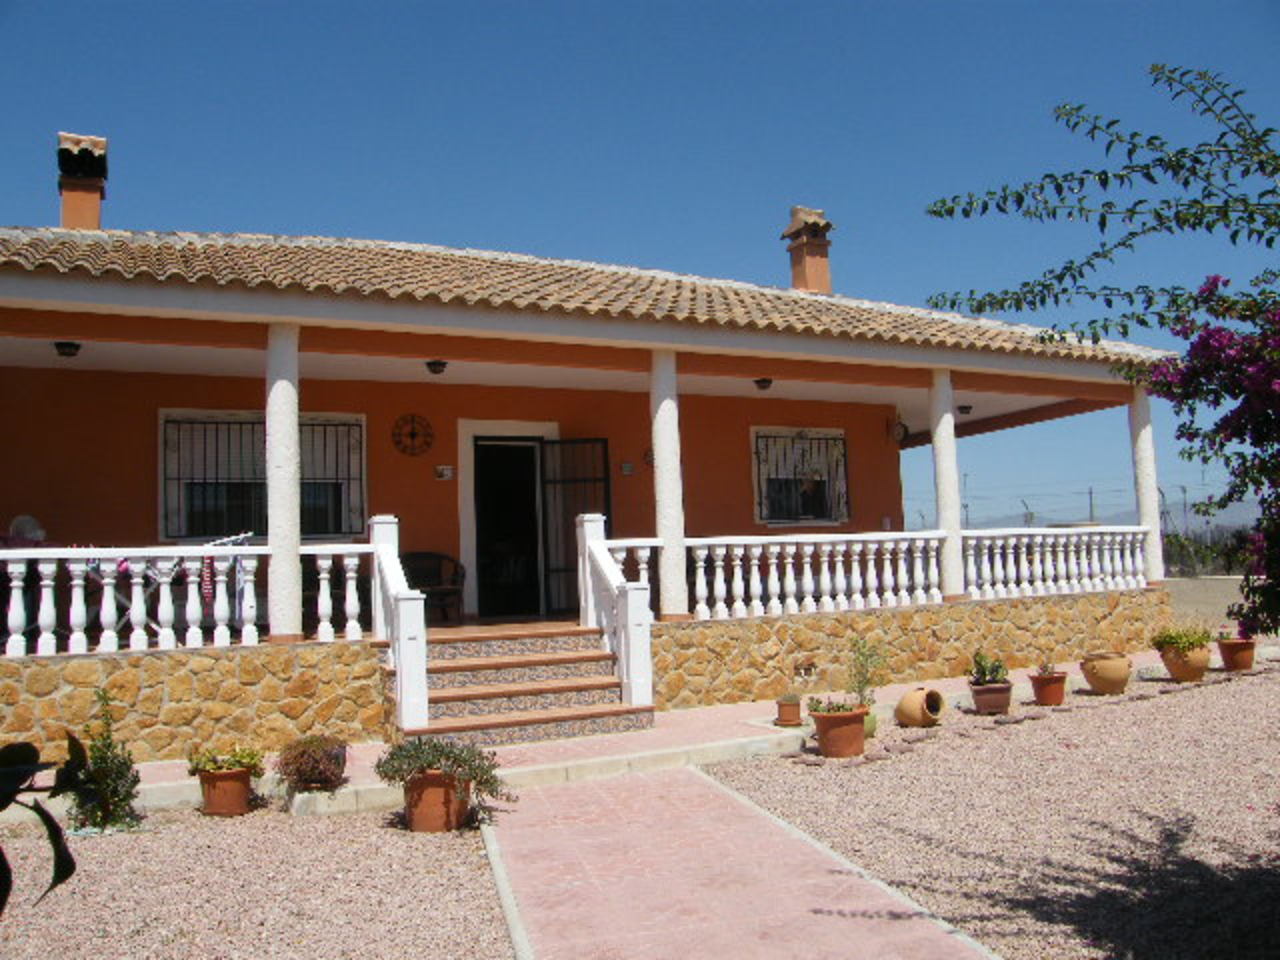 For sale: 3 bedroom house / villa in Dolores, Costa Blanca